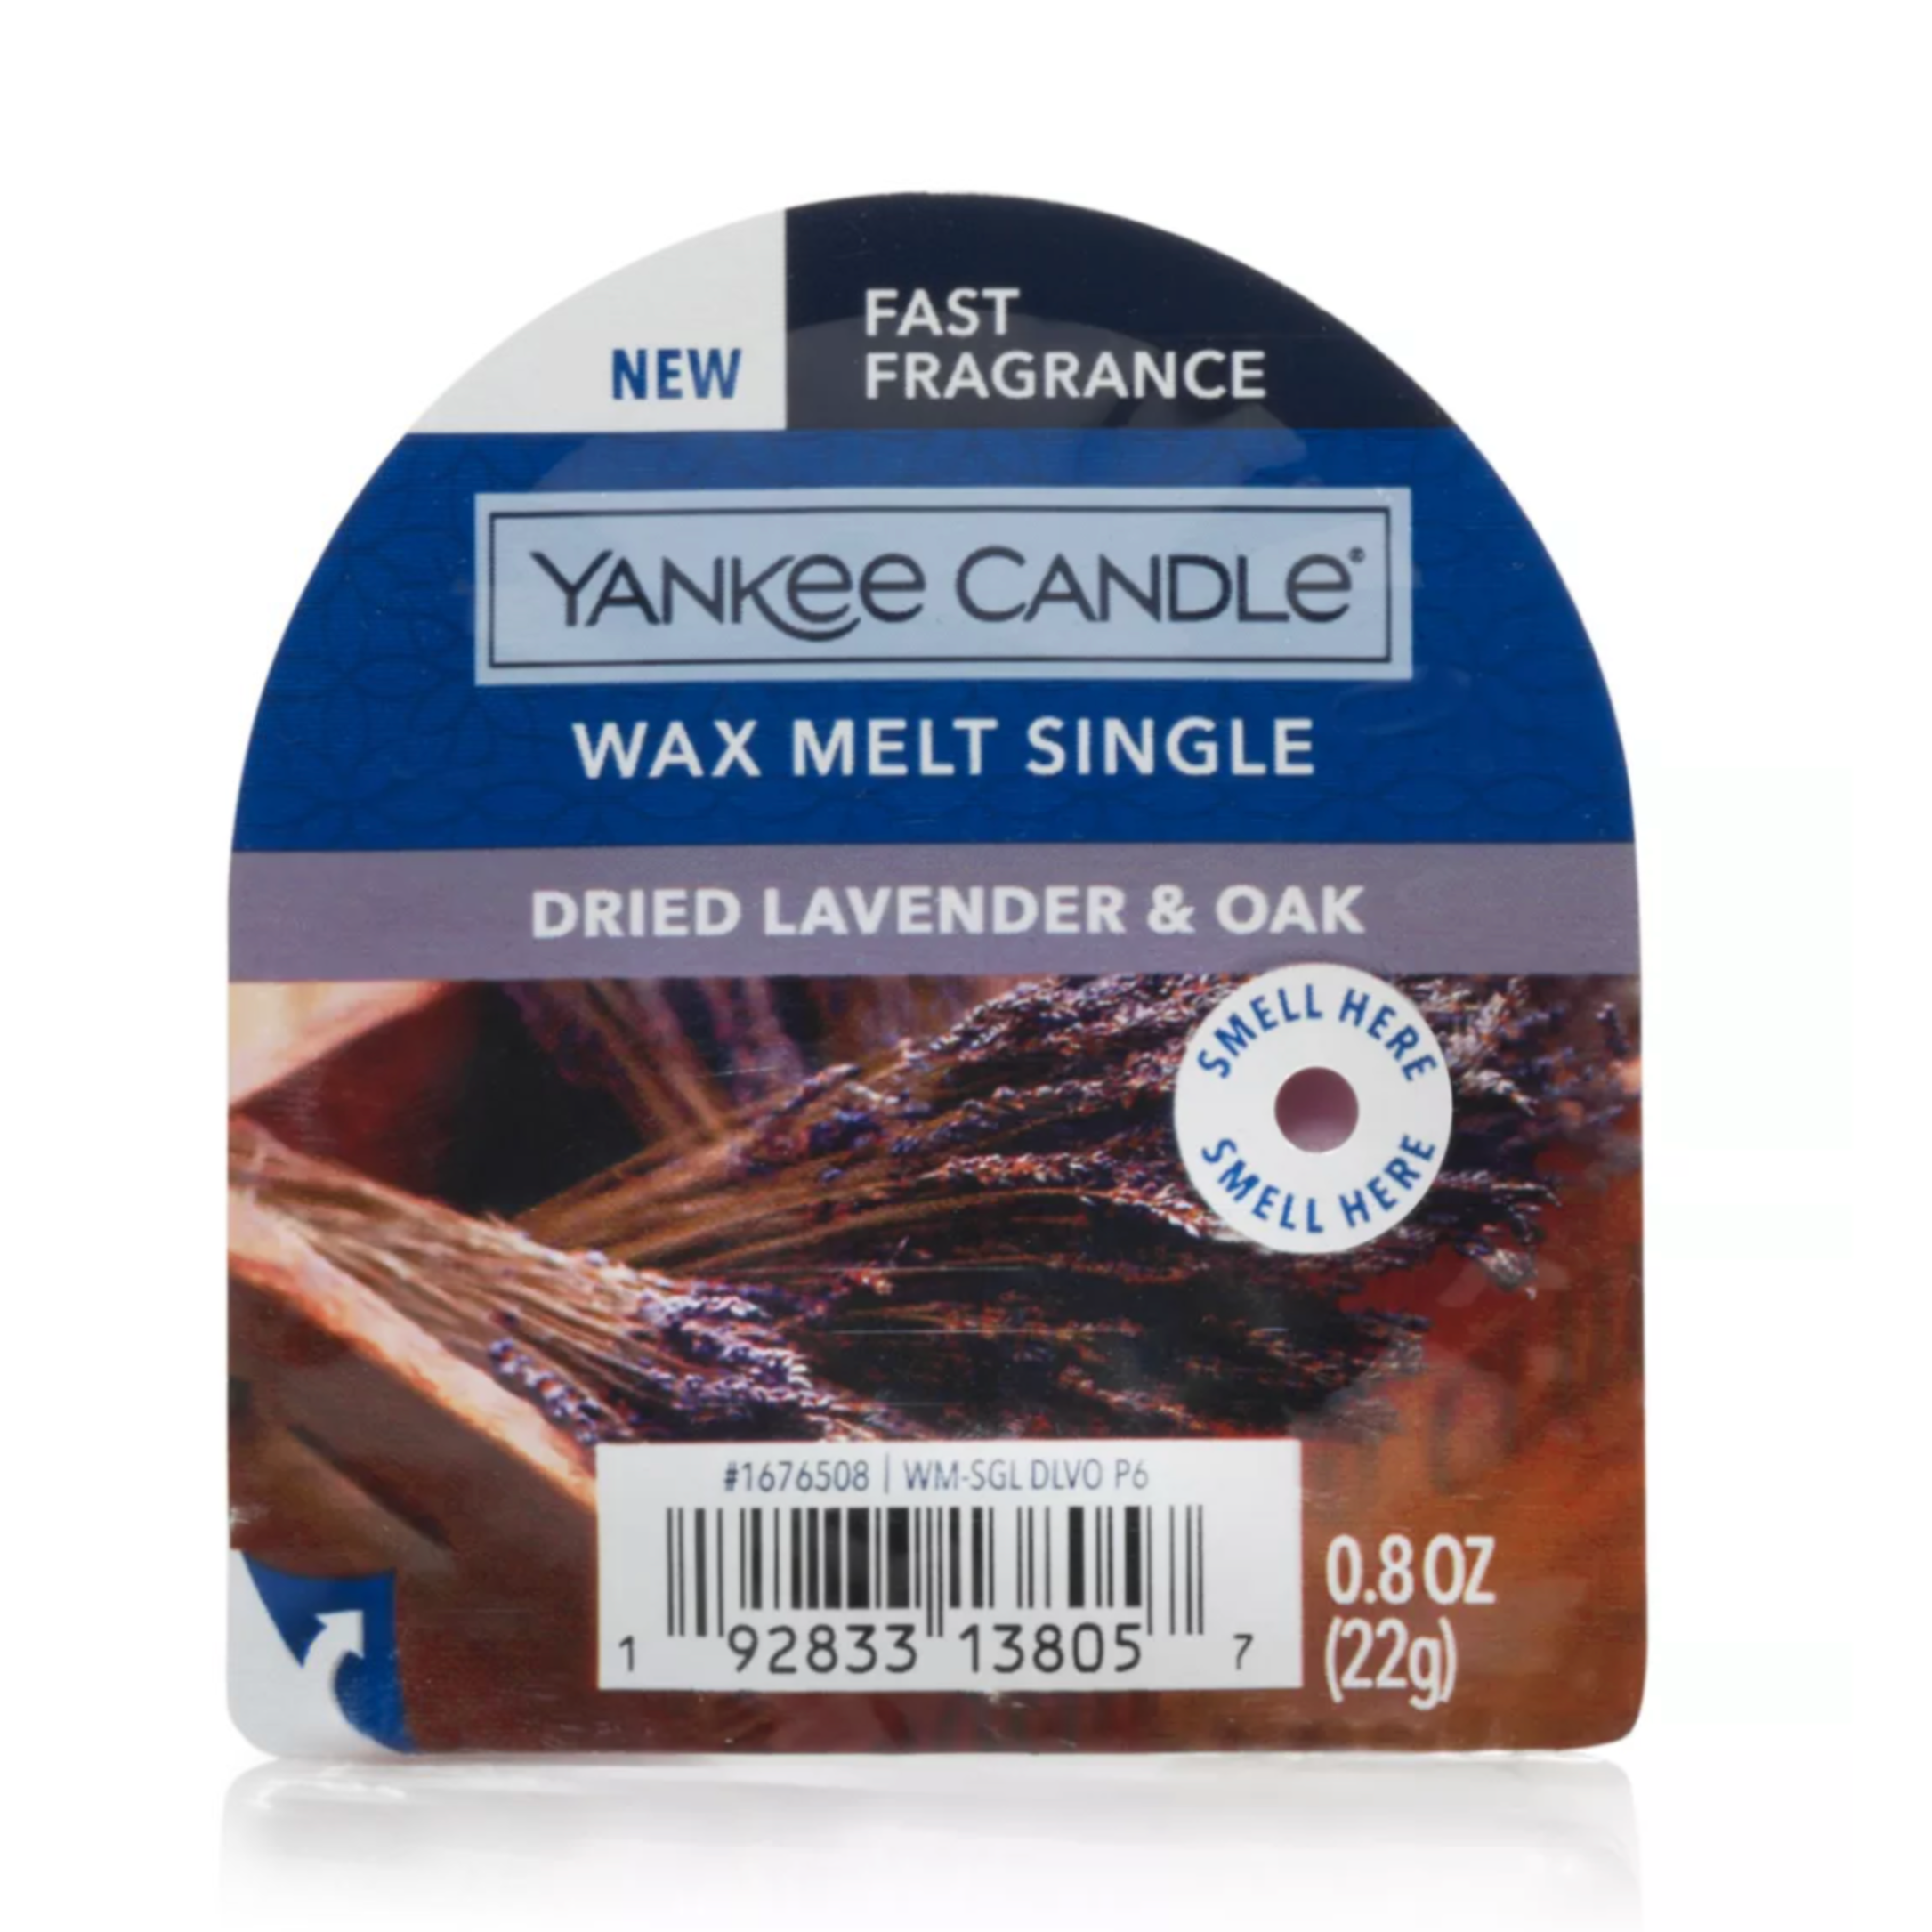 Dried Lavender & Oak Wax Melt Single